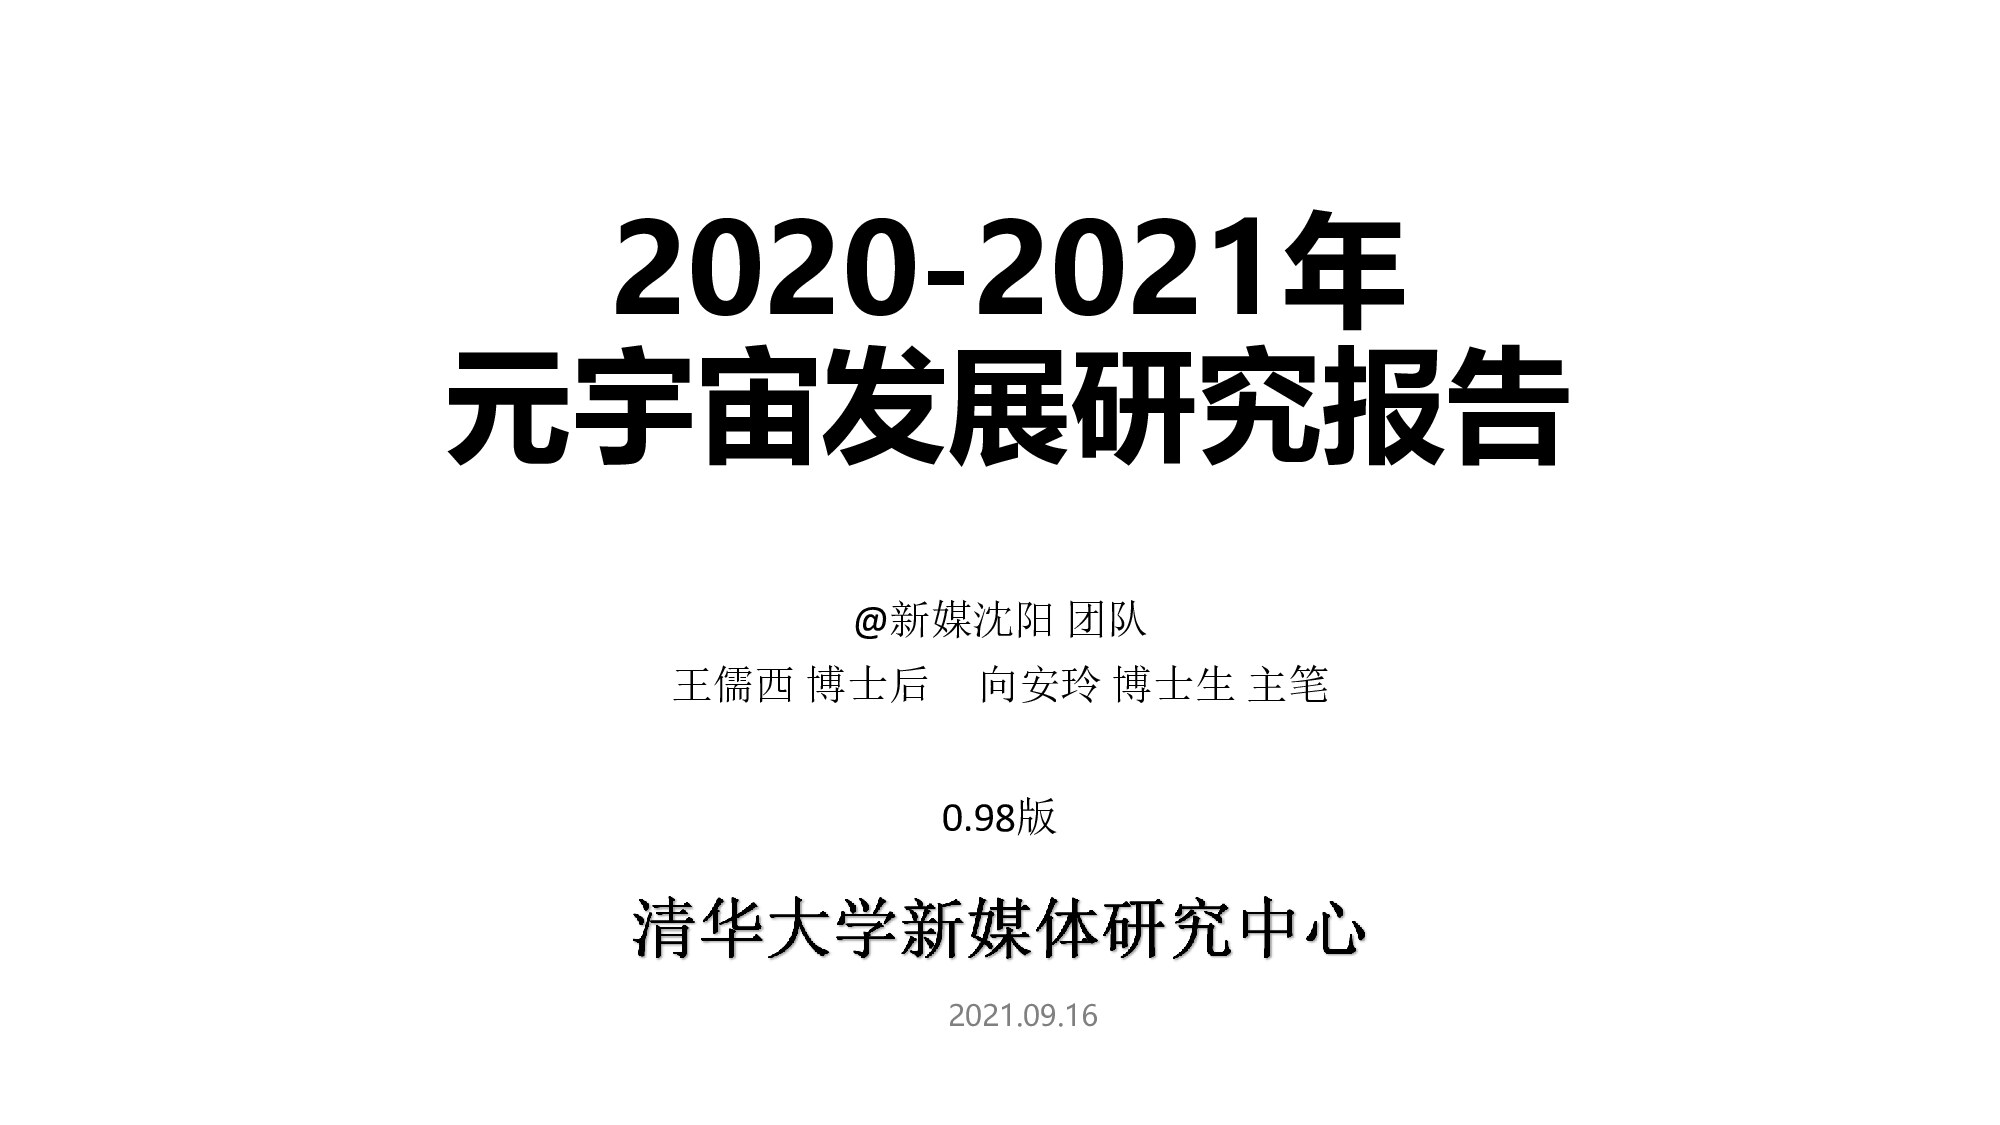 元宇宙发展研究报告2021-0.98版-清华